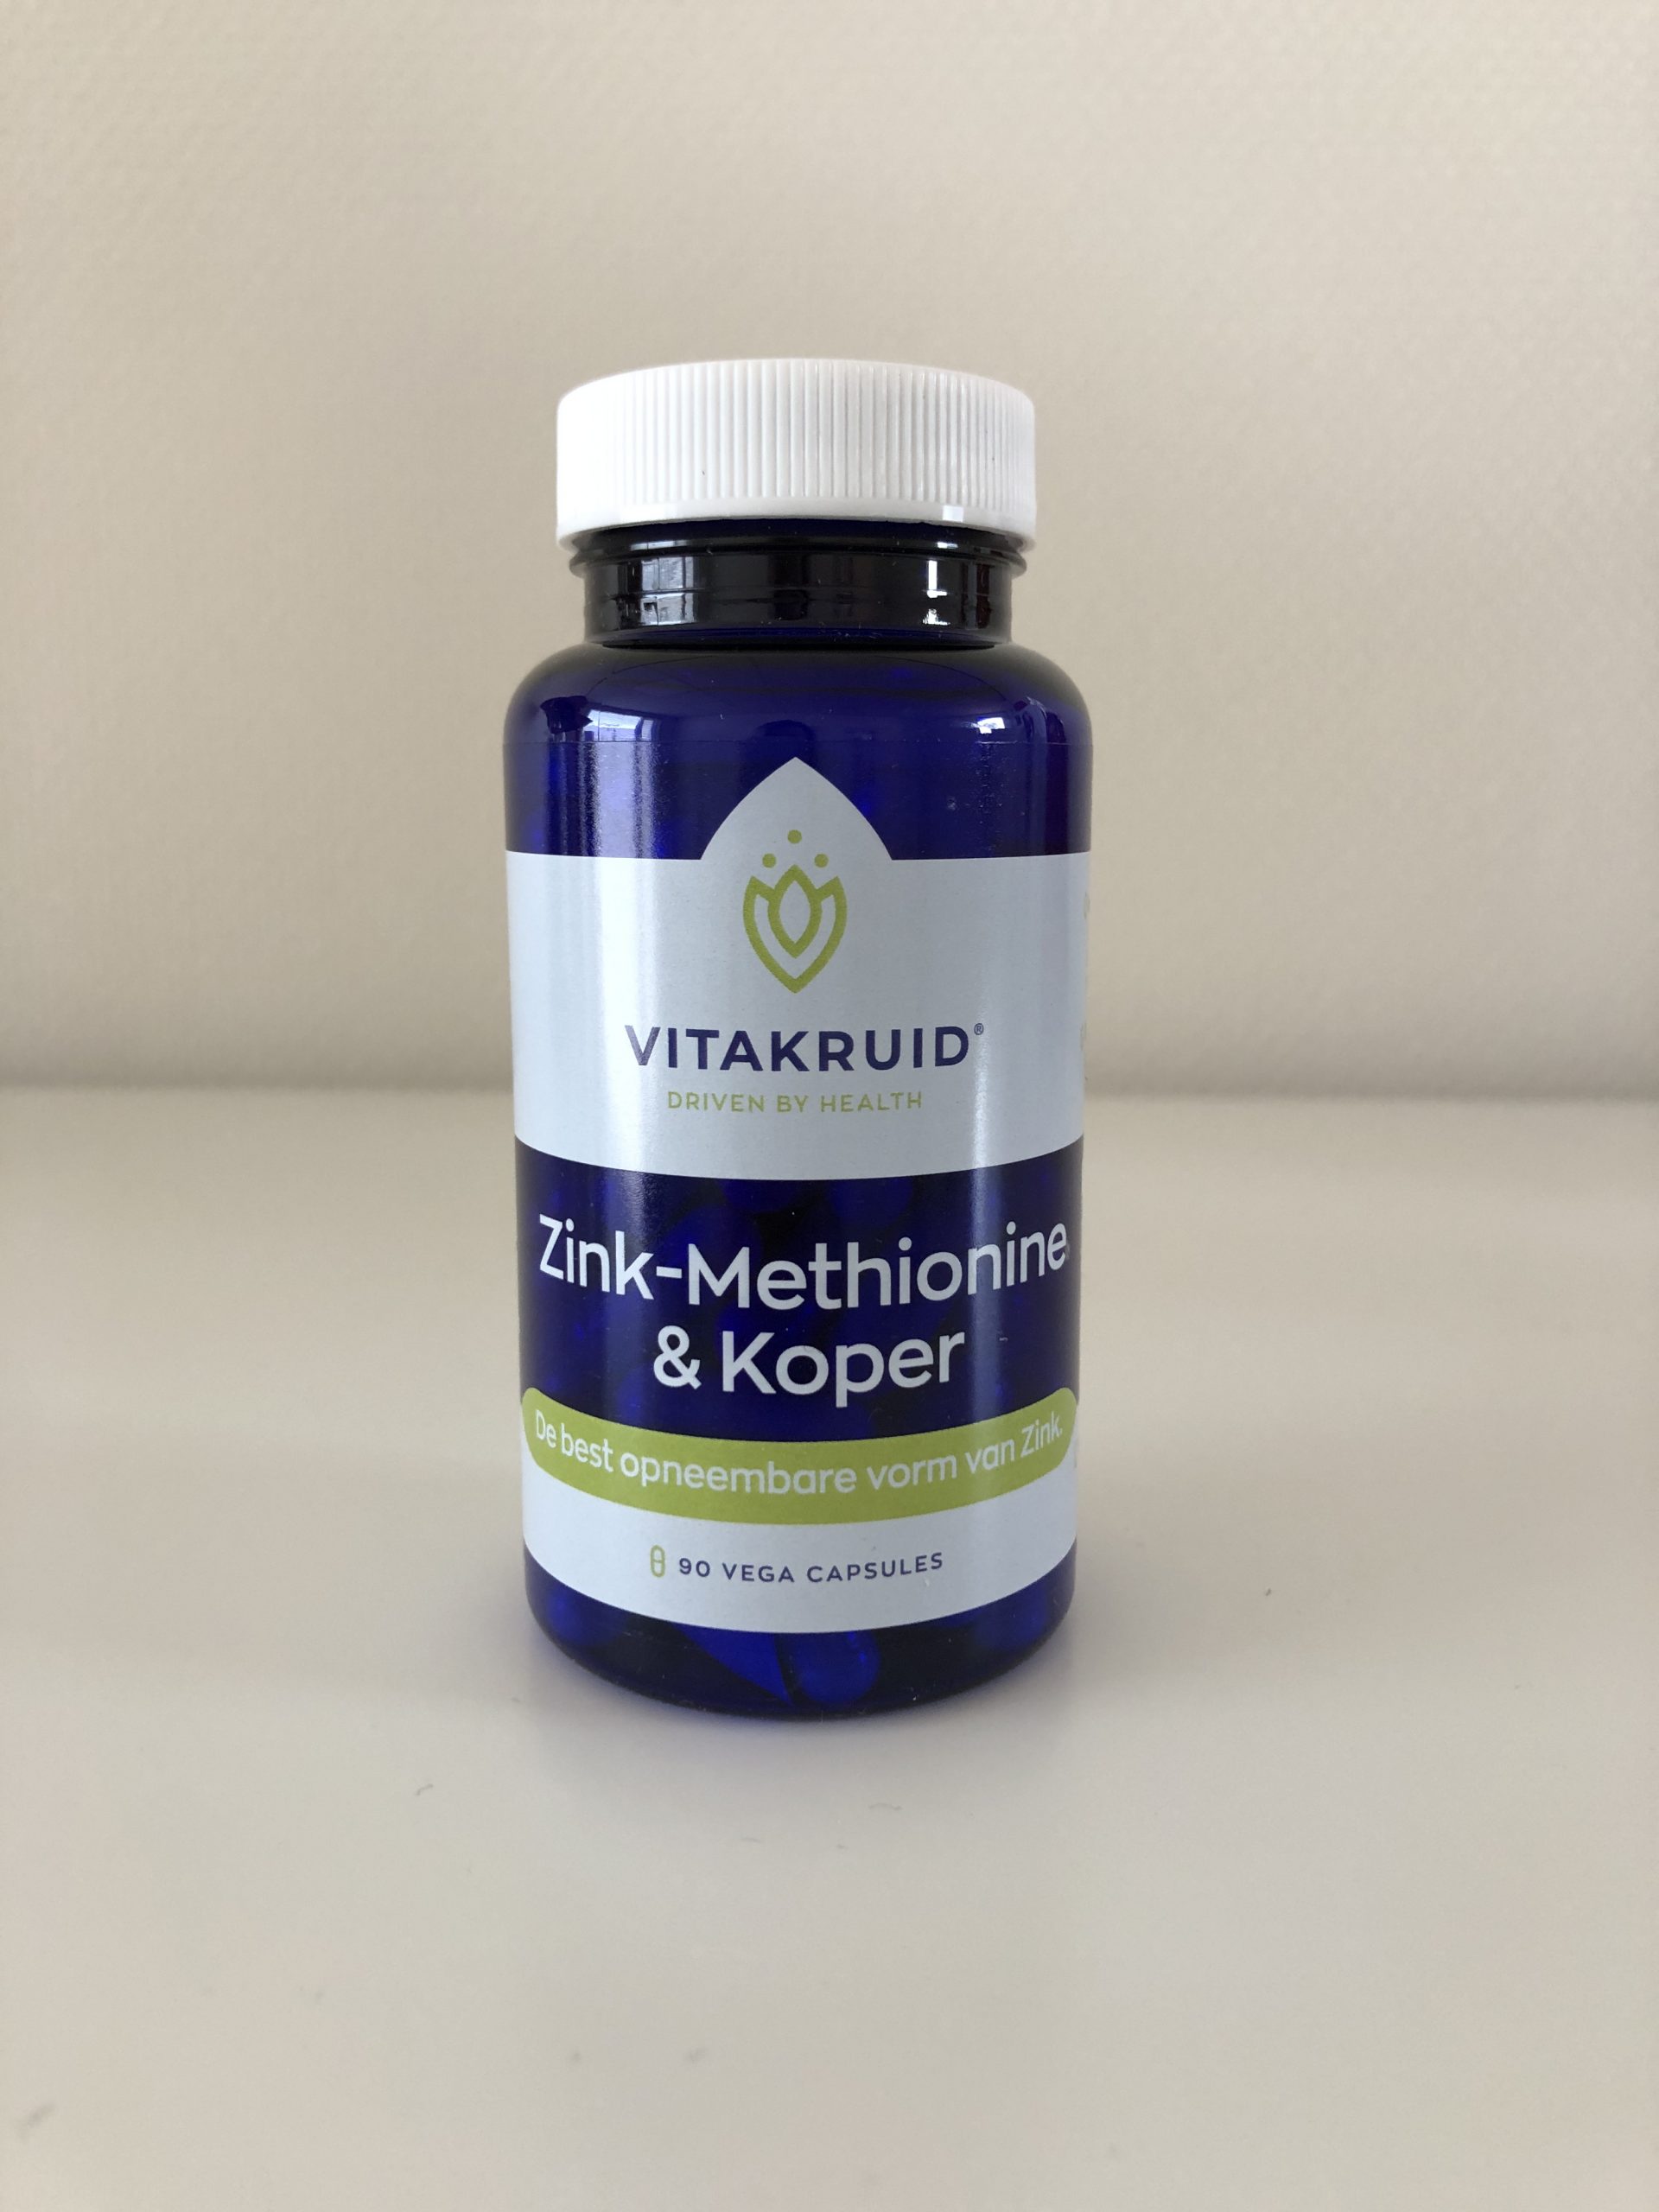 Minimaal Bestrooi Voor u Vitakruid Zink-Methionine & Koper - Derm Medic